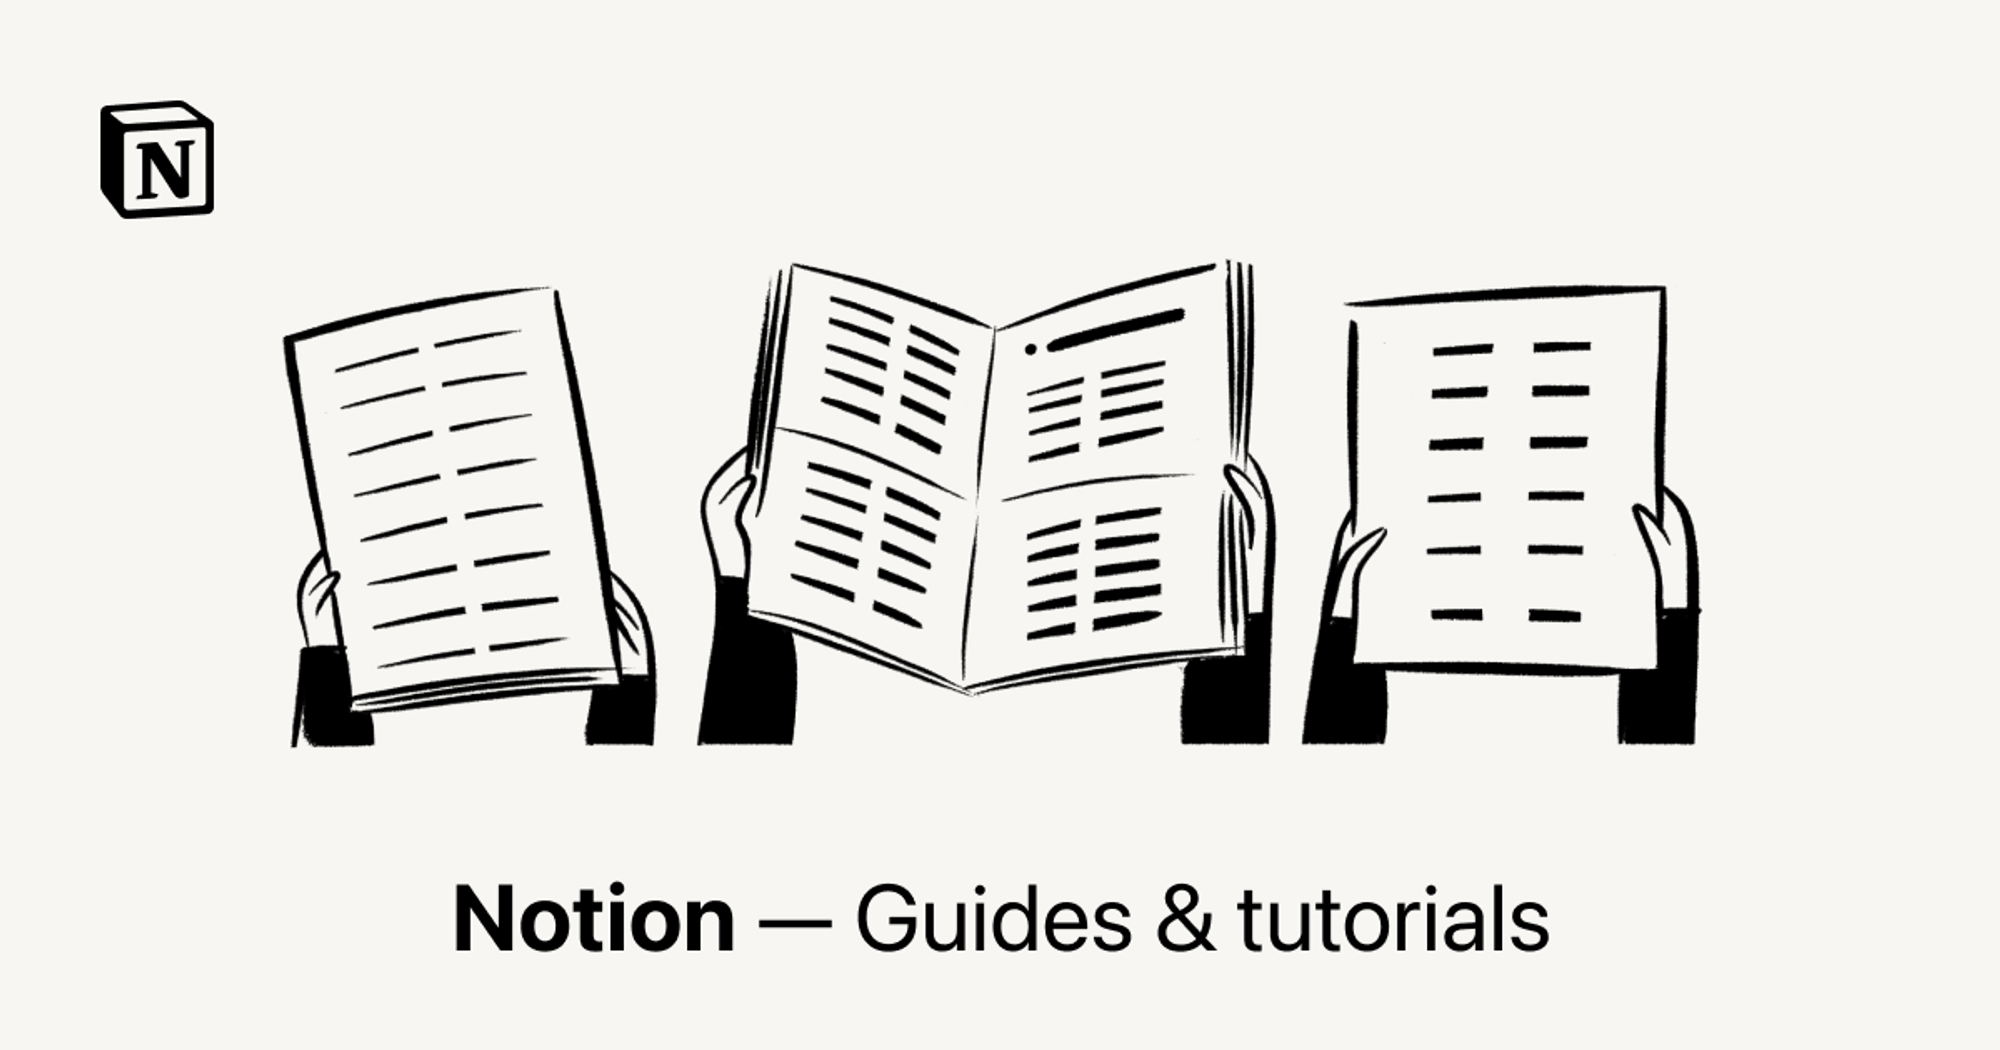 Notion - Guides & tutorials